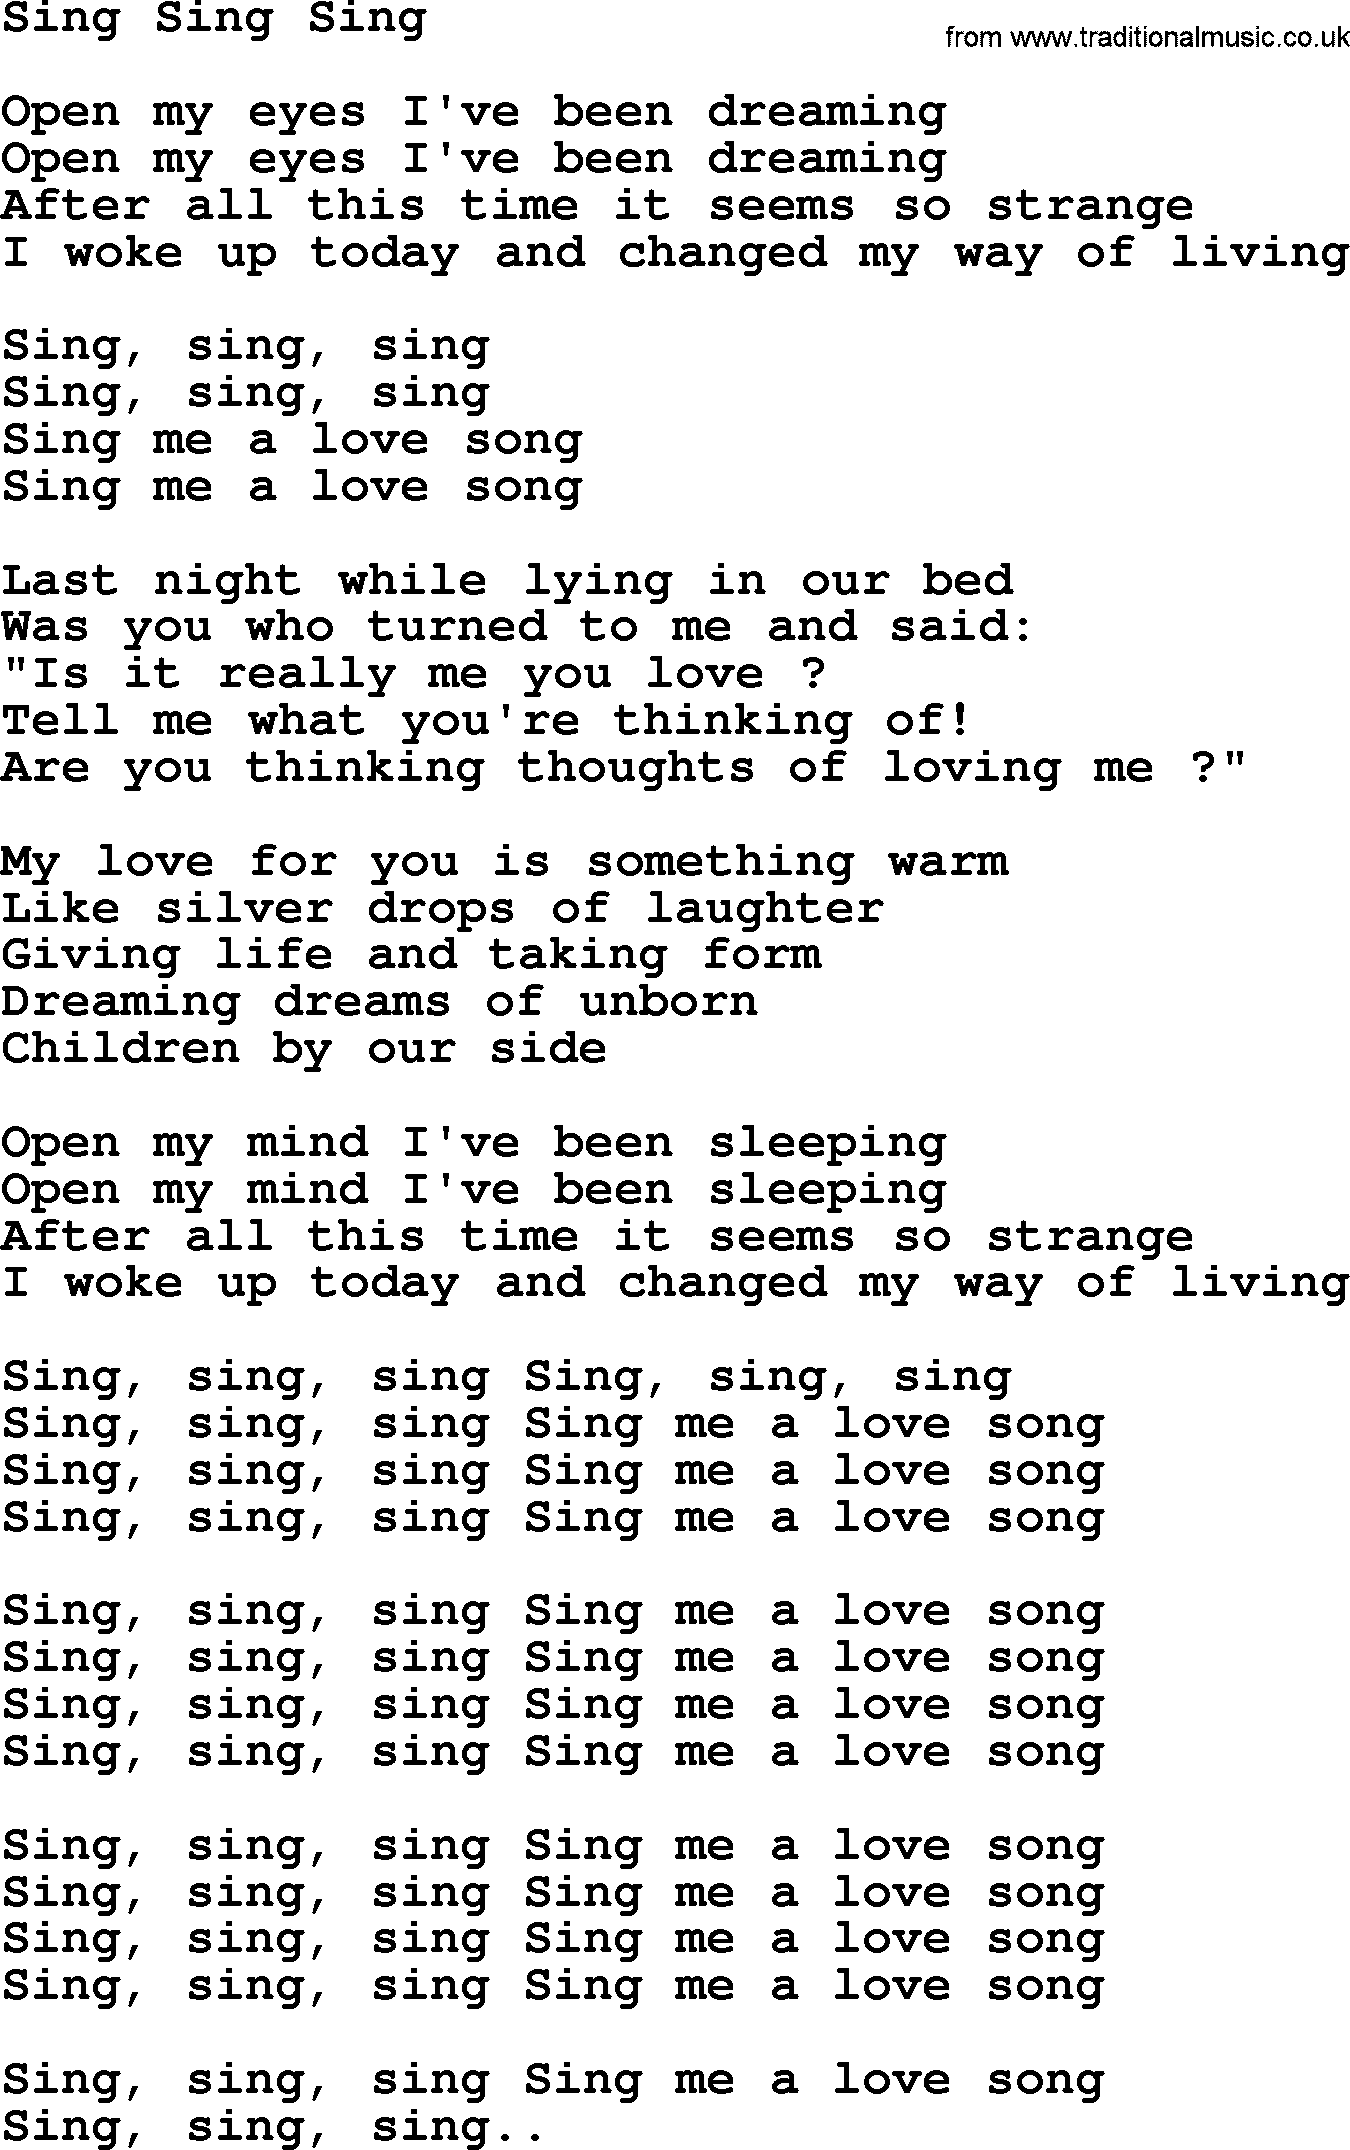 The Byrds song Sing Sing Sing, lyrics